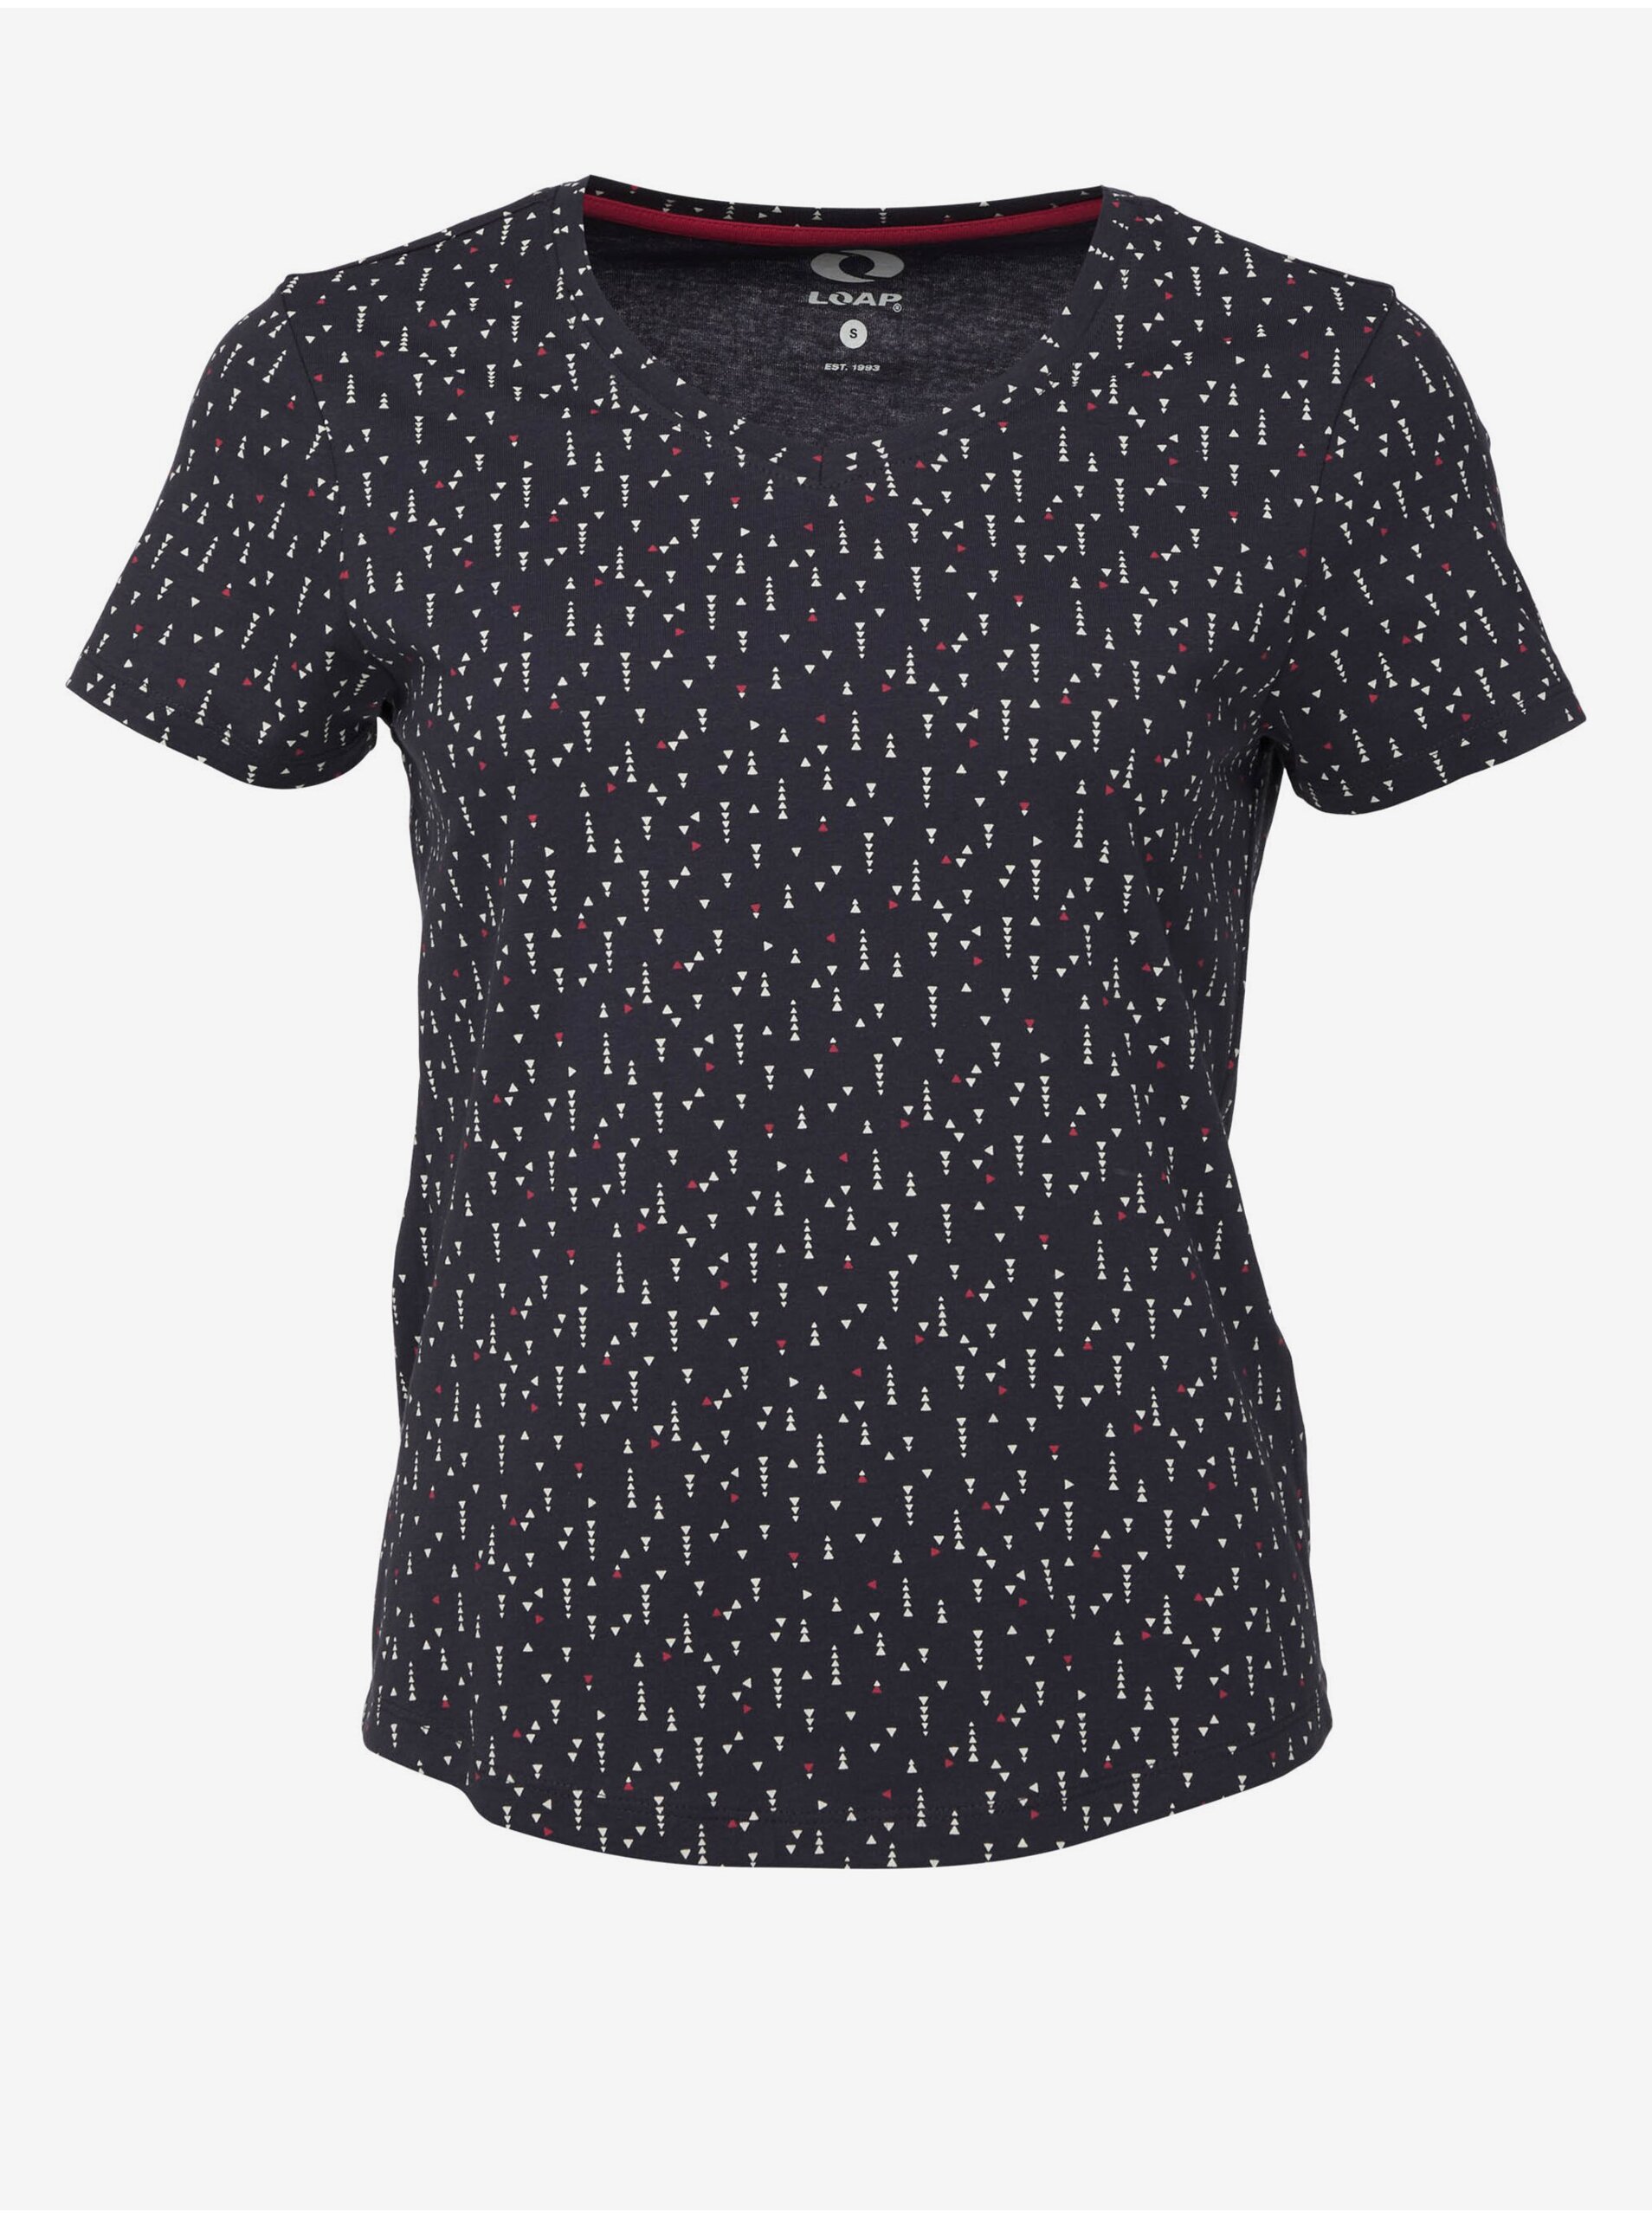 Lacno Tmavomodré dámske vzorované tričko LOAP BAKLAVA